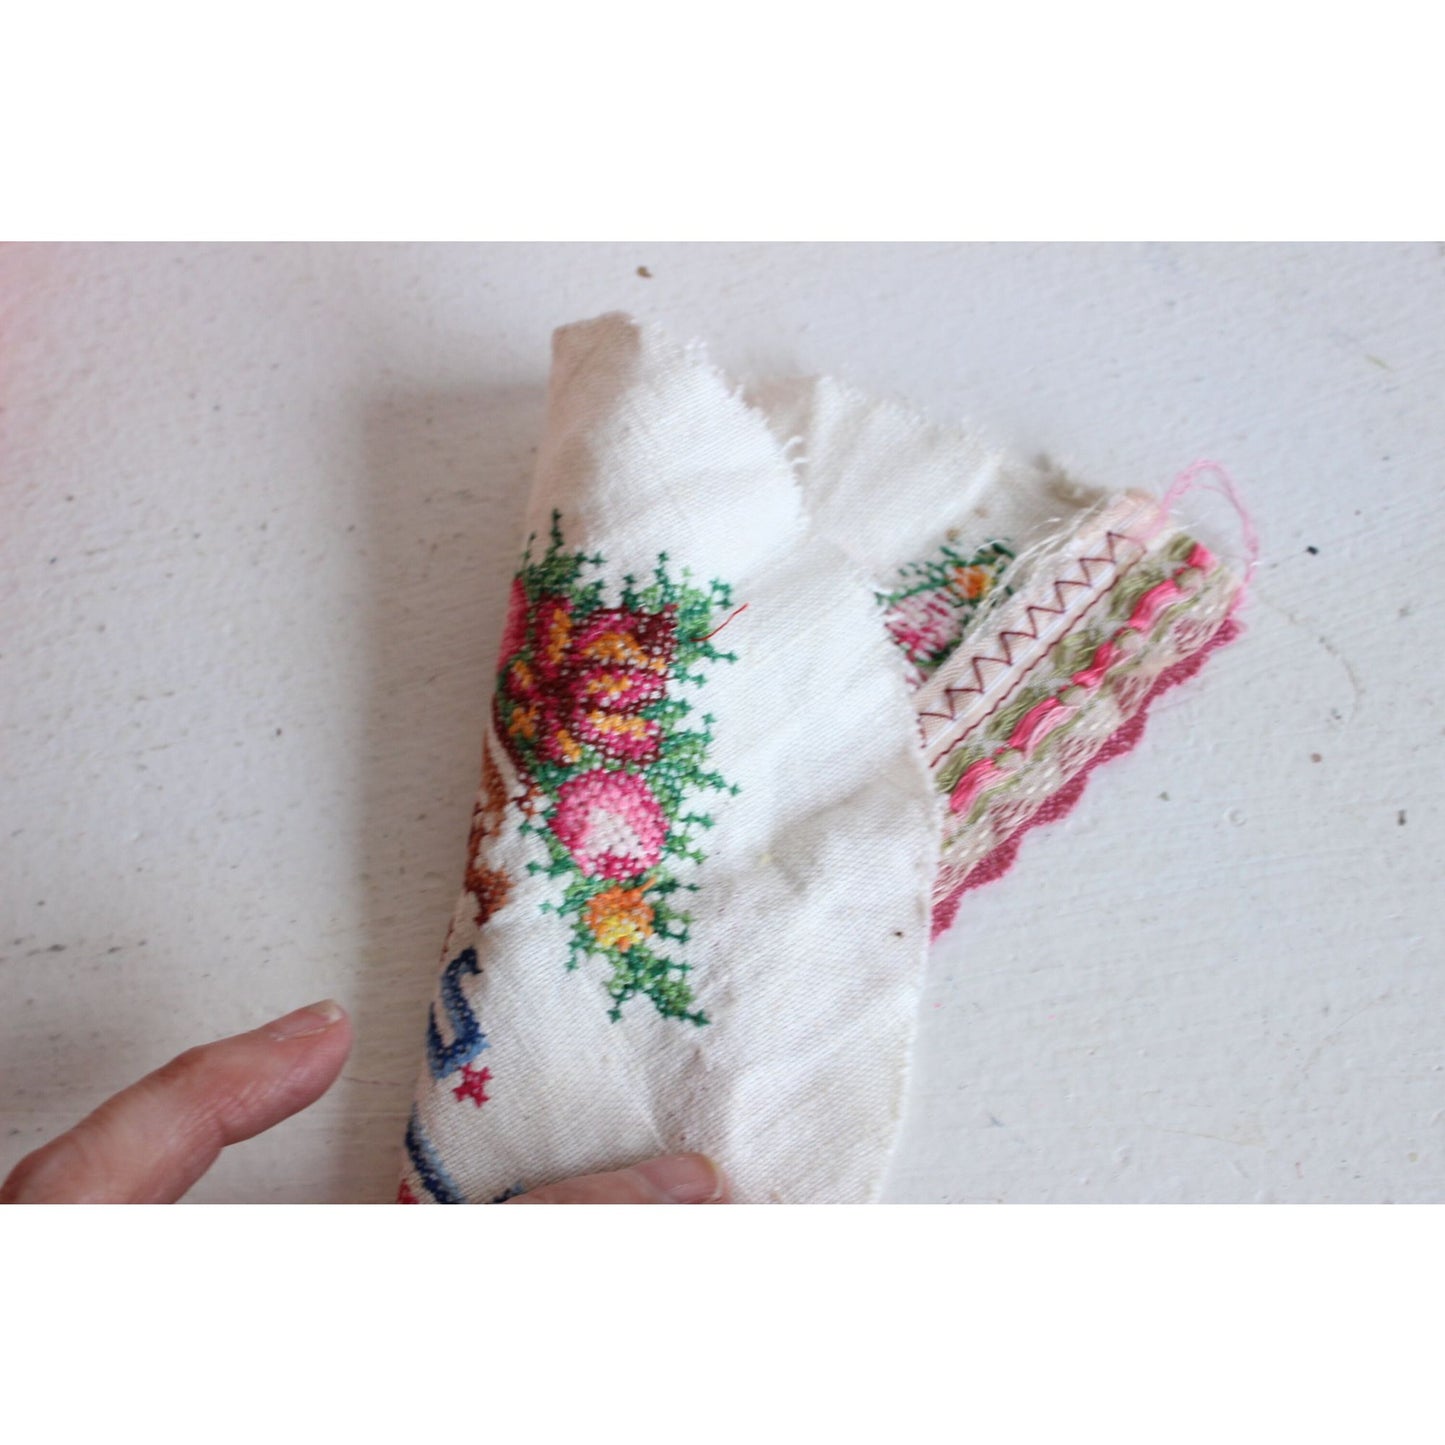 Vintage 1950s Cross Stitch Lace Trim Pillowcase End